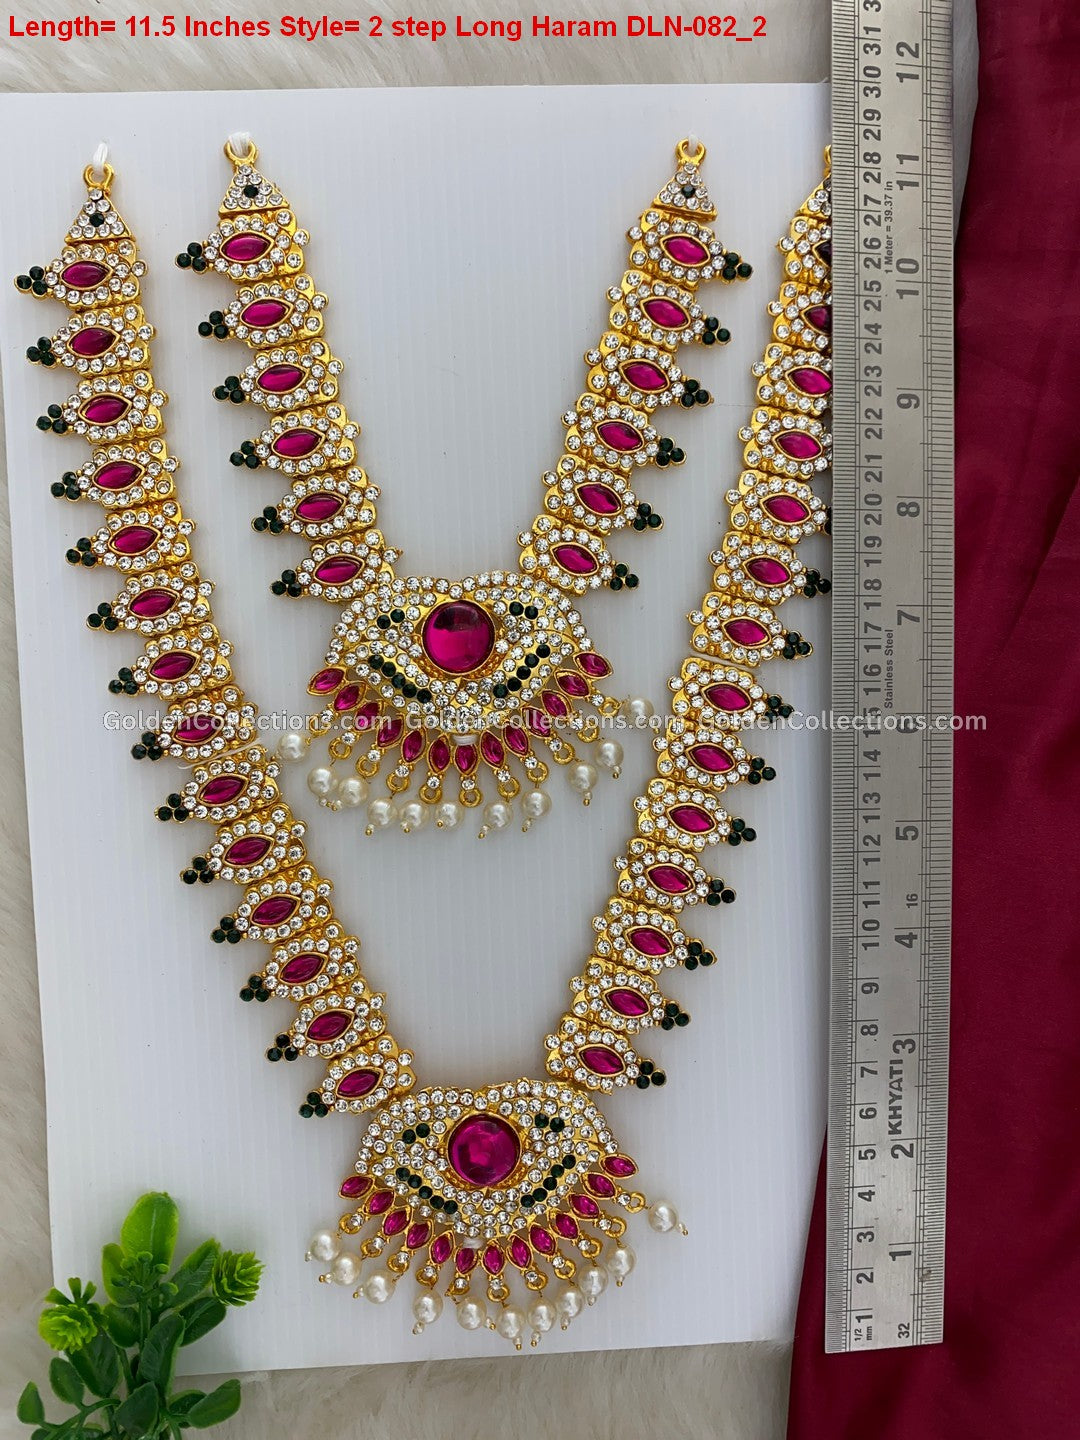 Deity Long Necklace for Varalakshmi - Buy Online DLN-082 2